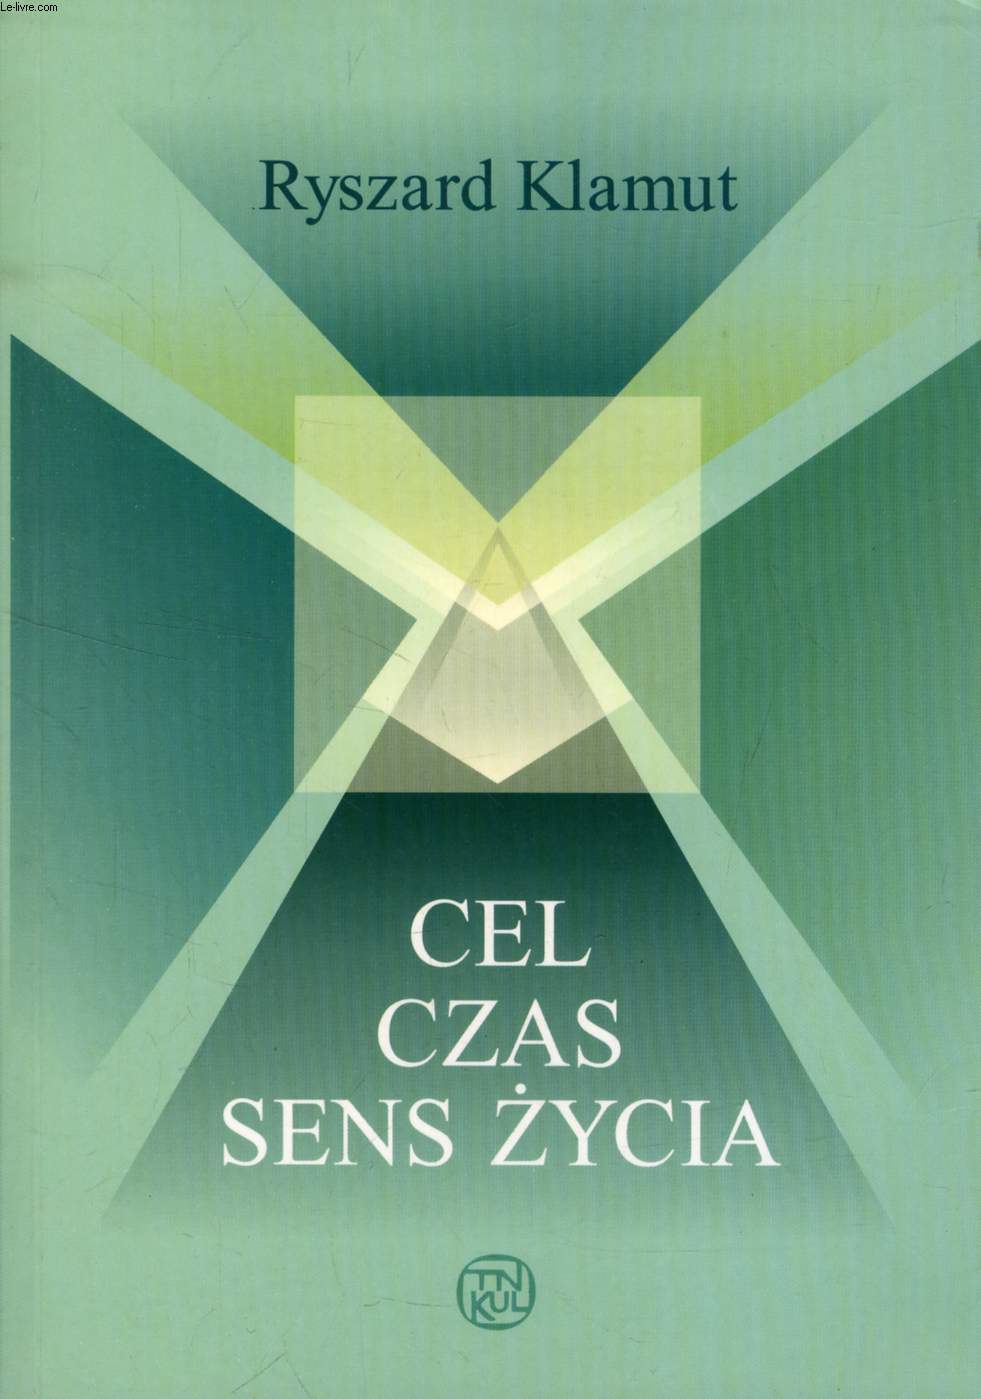 CEL - CZAS - SENS ZYCIA